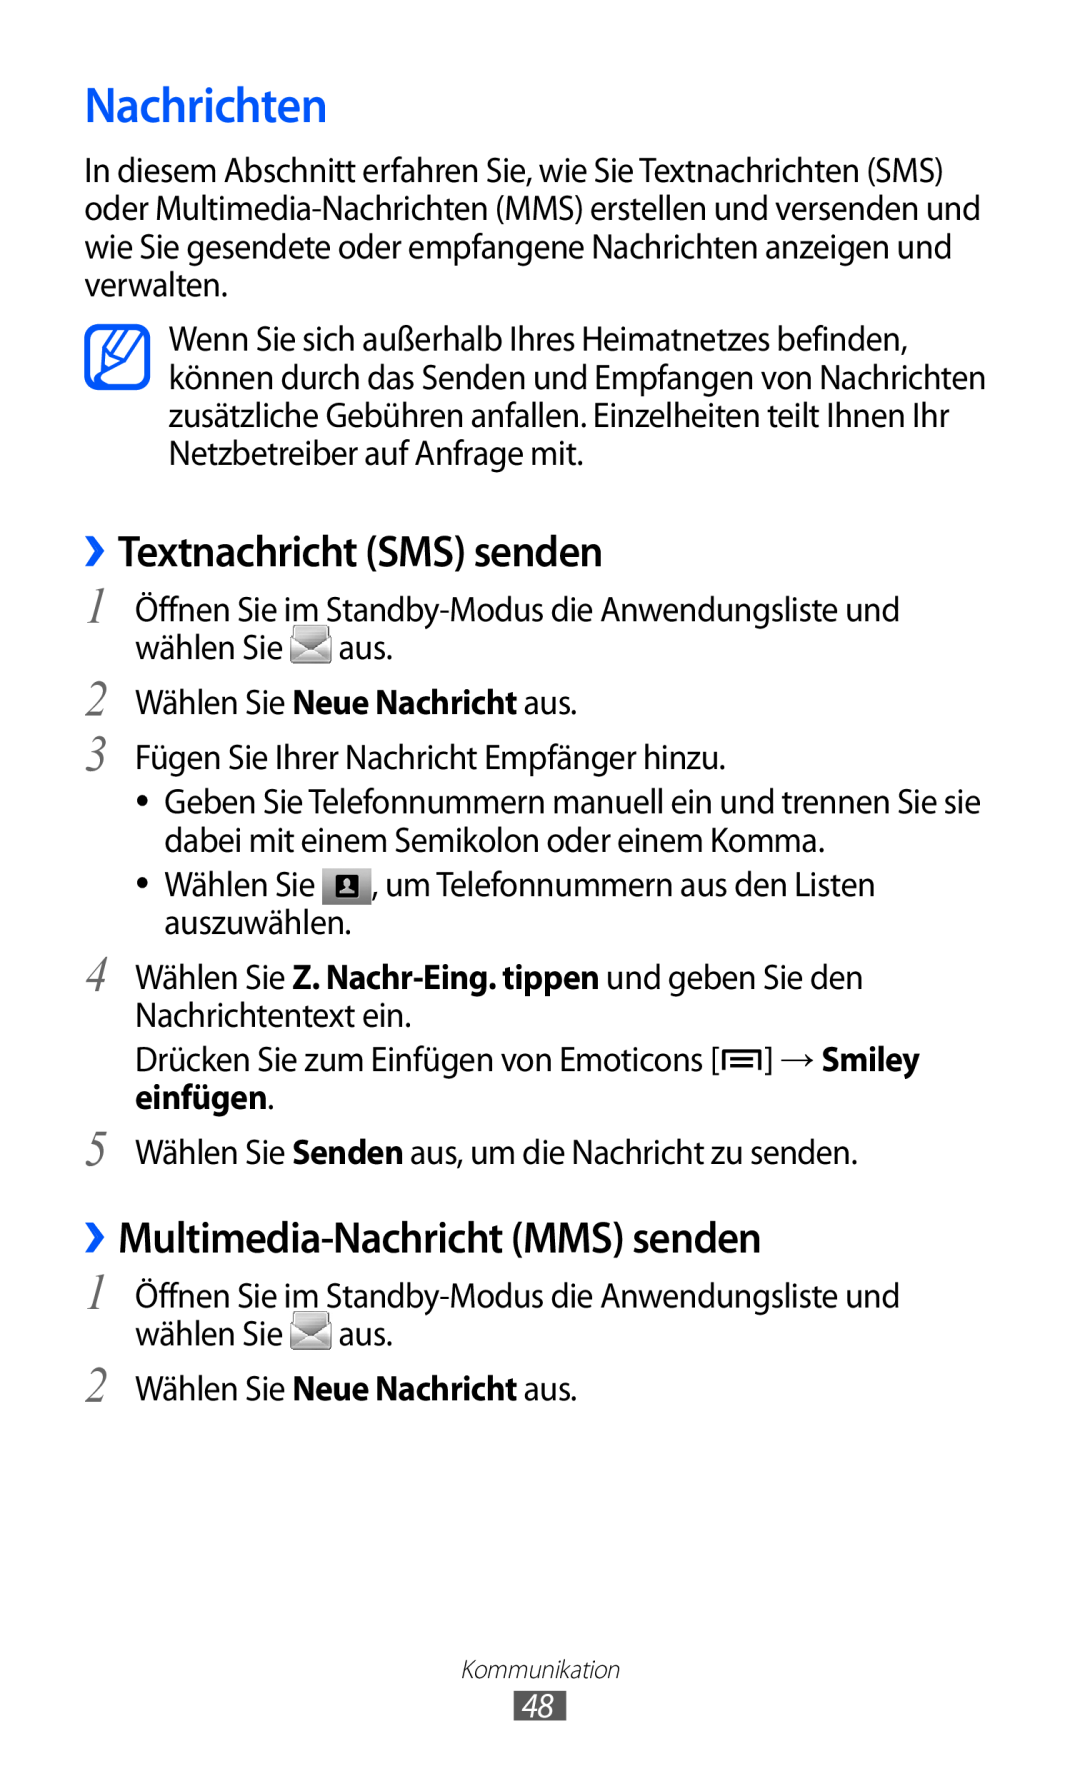 Samsung GT-S6500ZYDTMN, GT-S6500RWDTUR manual Nachrichten, ››Textnachricht SMS senden, ››Multimedia-Nachricht MMS senden 